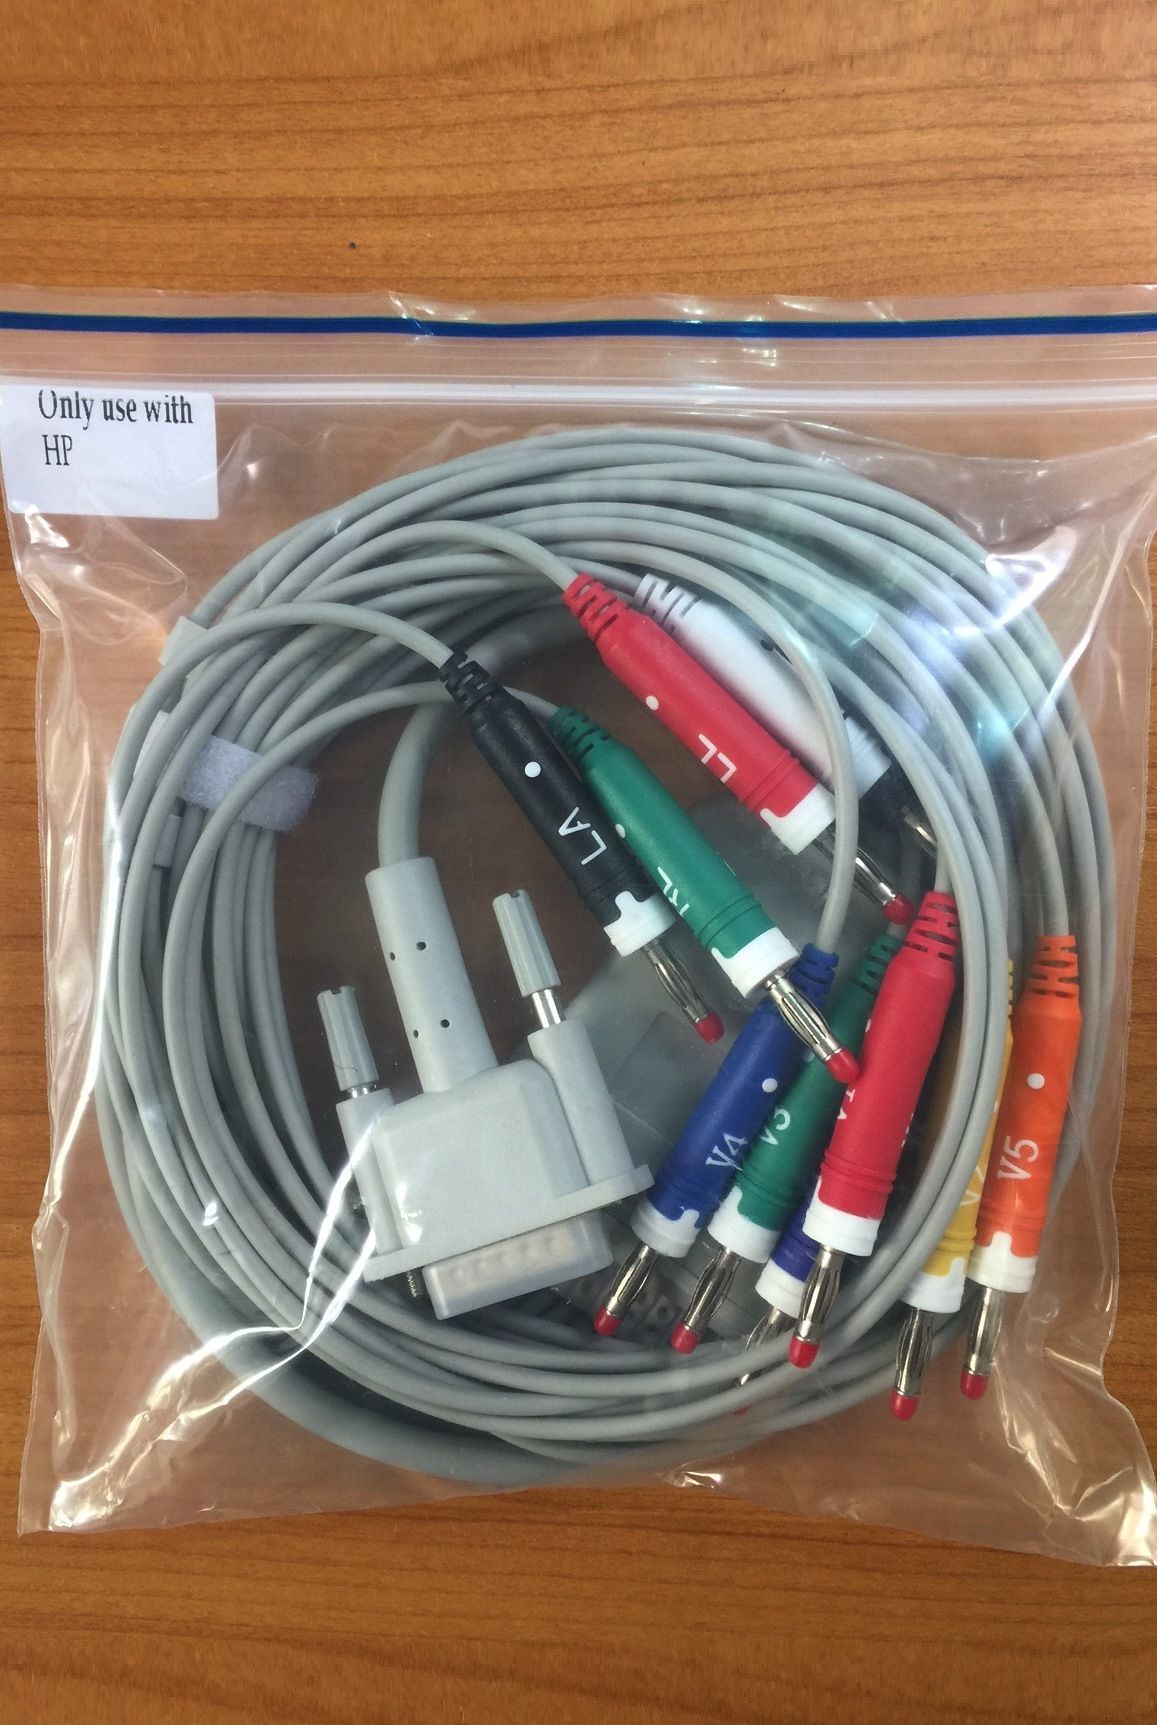 EKG Cable Philips HP M1771A_สายอีเคจีสำหรับเครื่องวัดบันทึกคลื่นไฟ้าหัวใจ ฟิลิปส์หรือเอสพี Philips HP